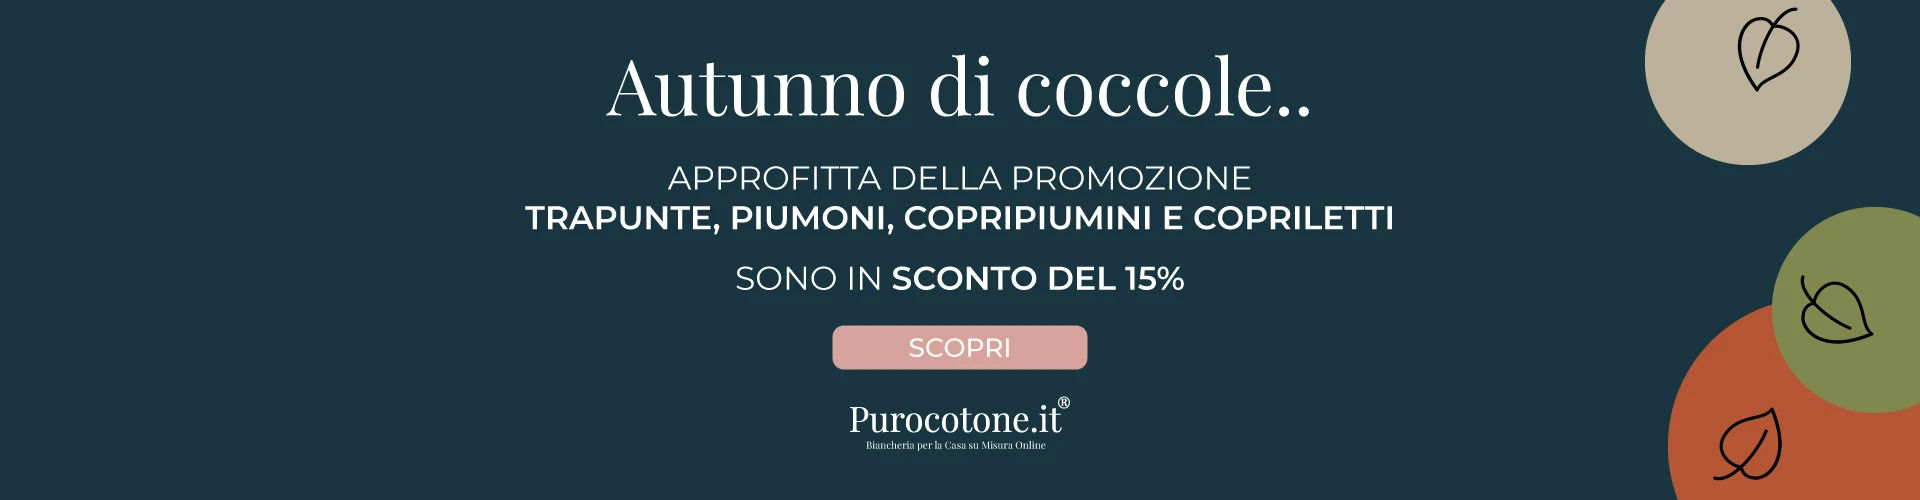 Promozione 15% | Purocotone.it